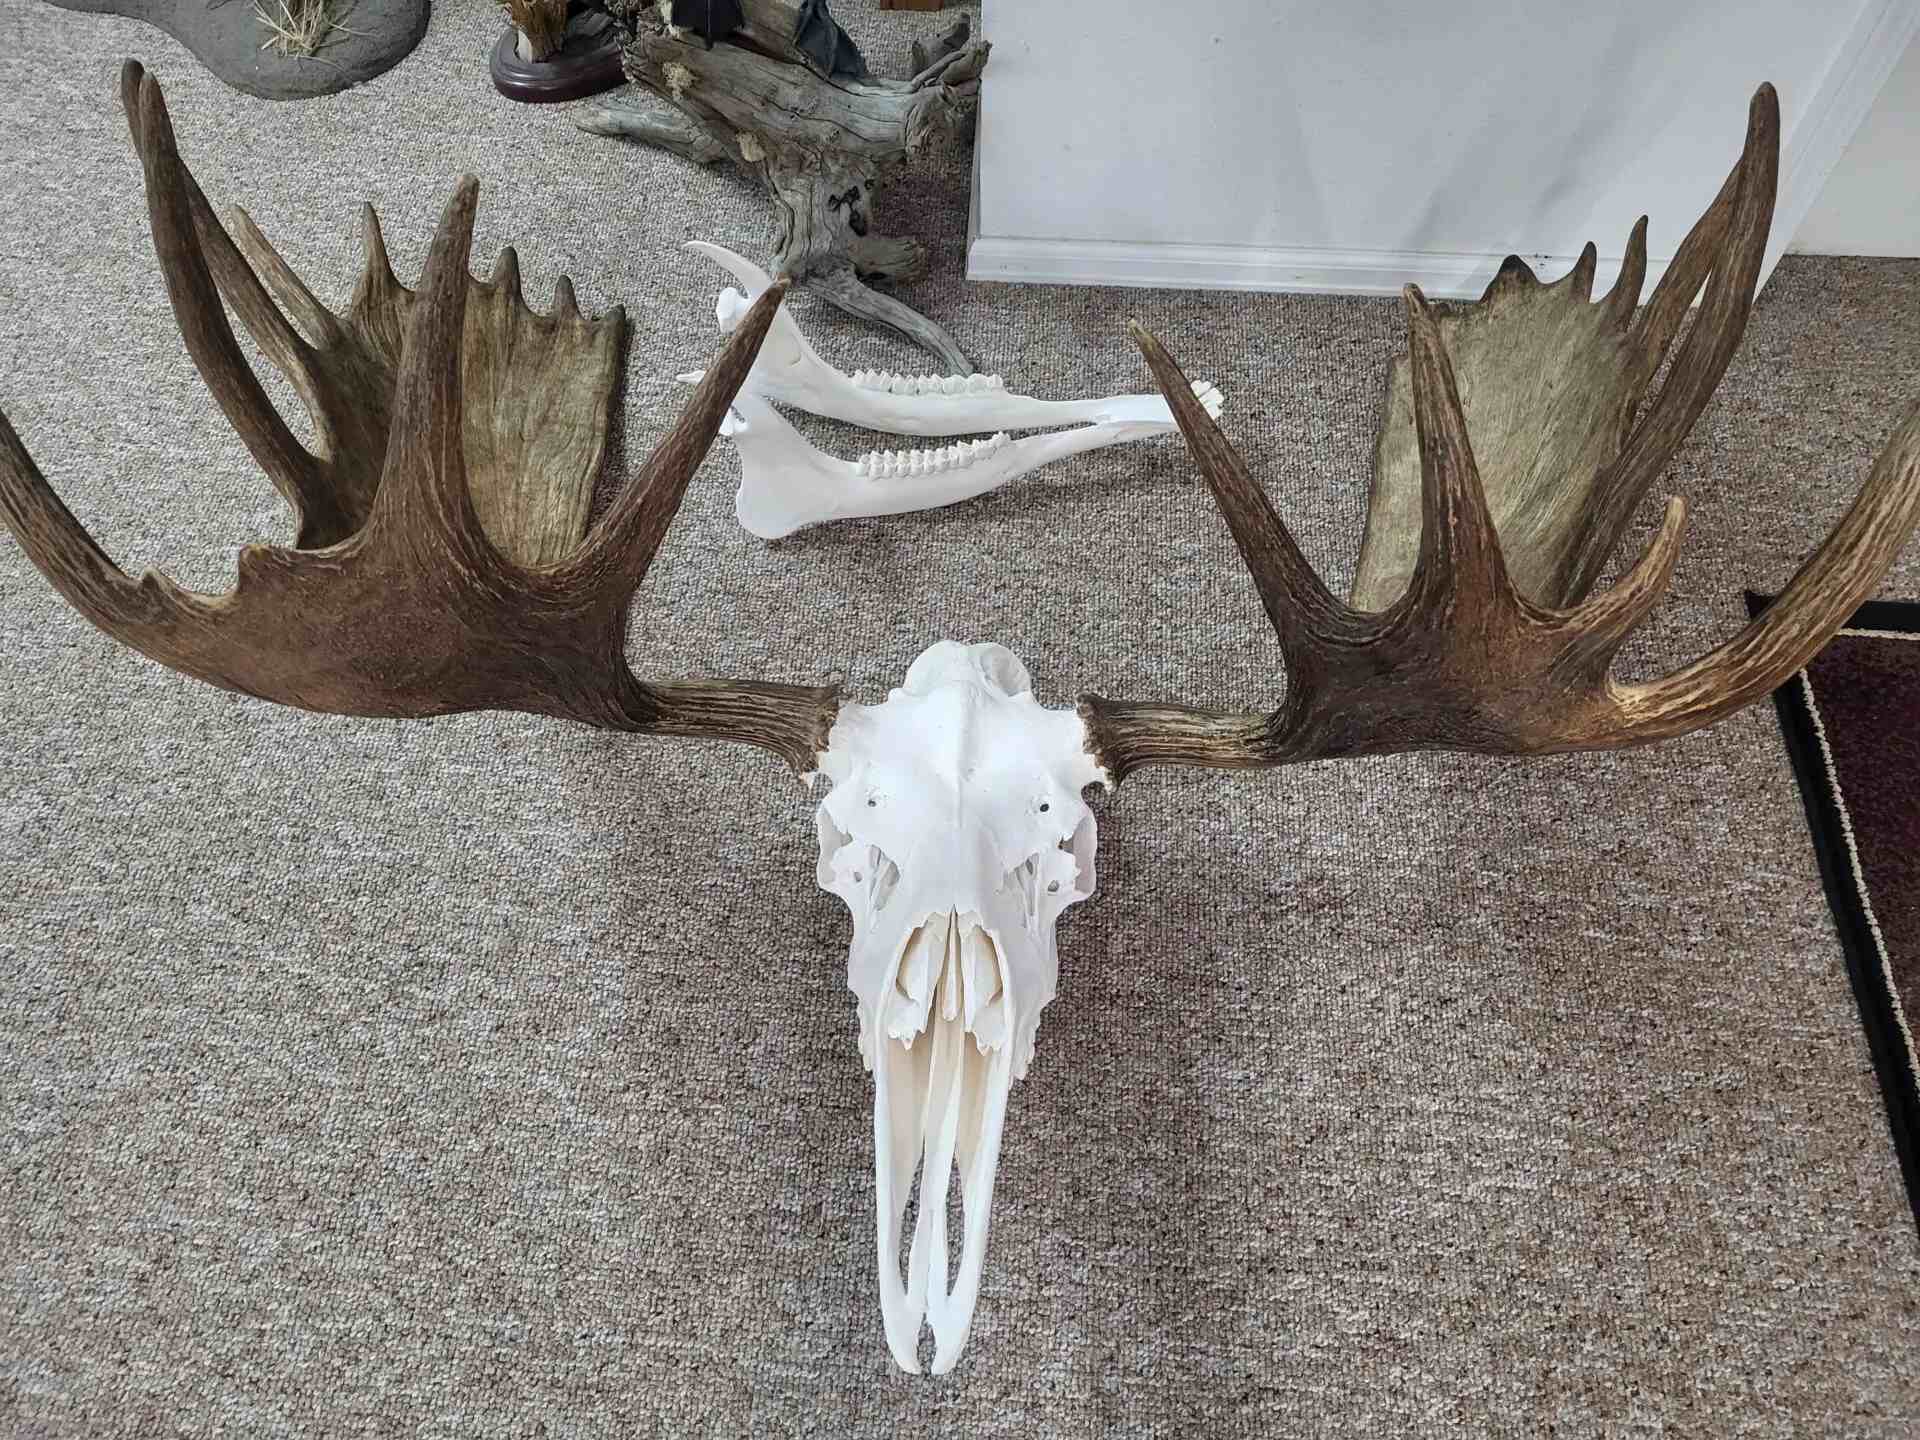 A Deer Skeleton With Horns in Brown